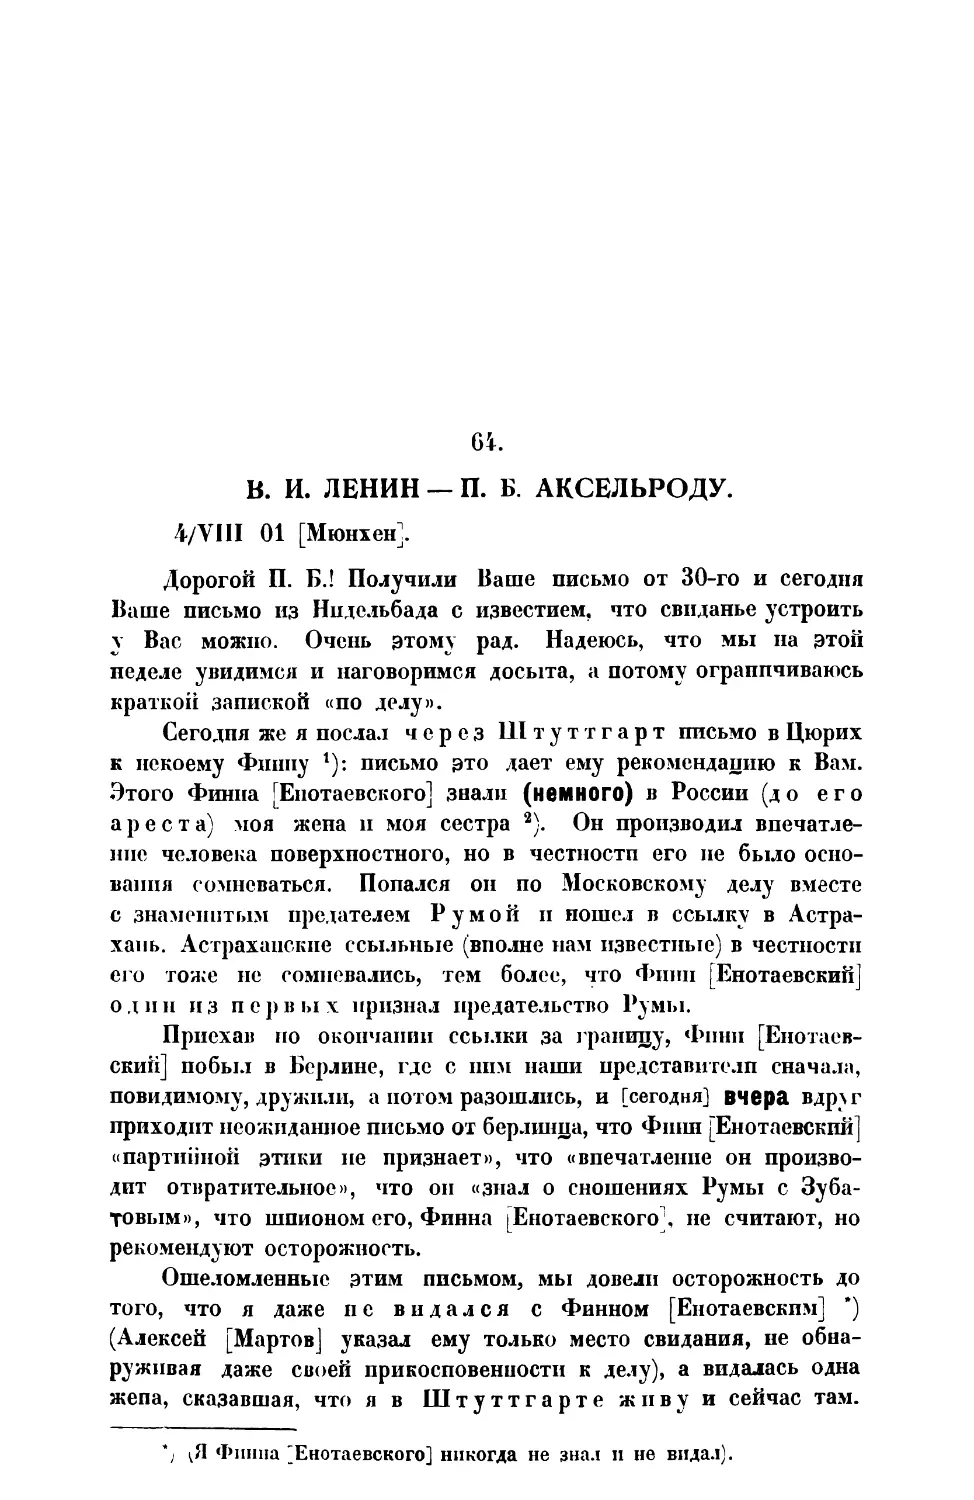 64. В. И. Ленин. — Письмо П. Б. Аксельроду от 4 VIII 1901 г.